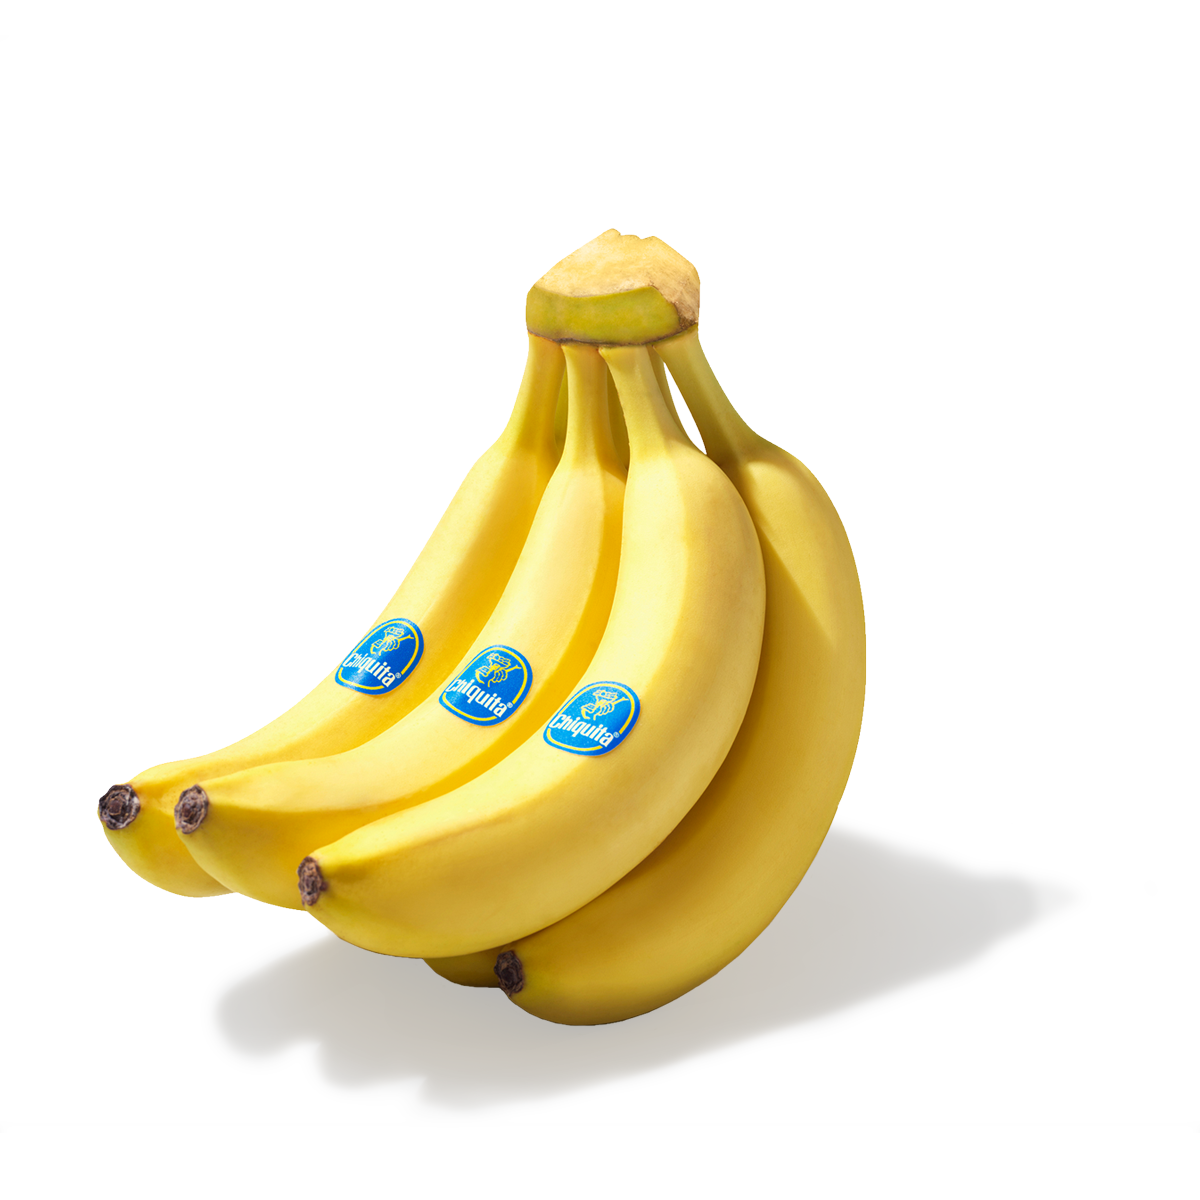 GEBURTSTAG Chiquita Früchte Banane